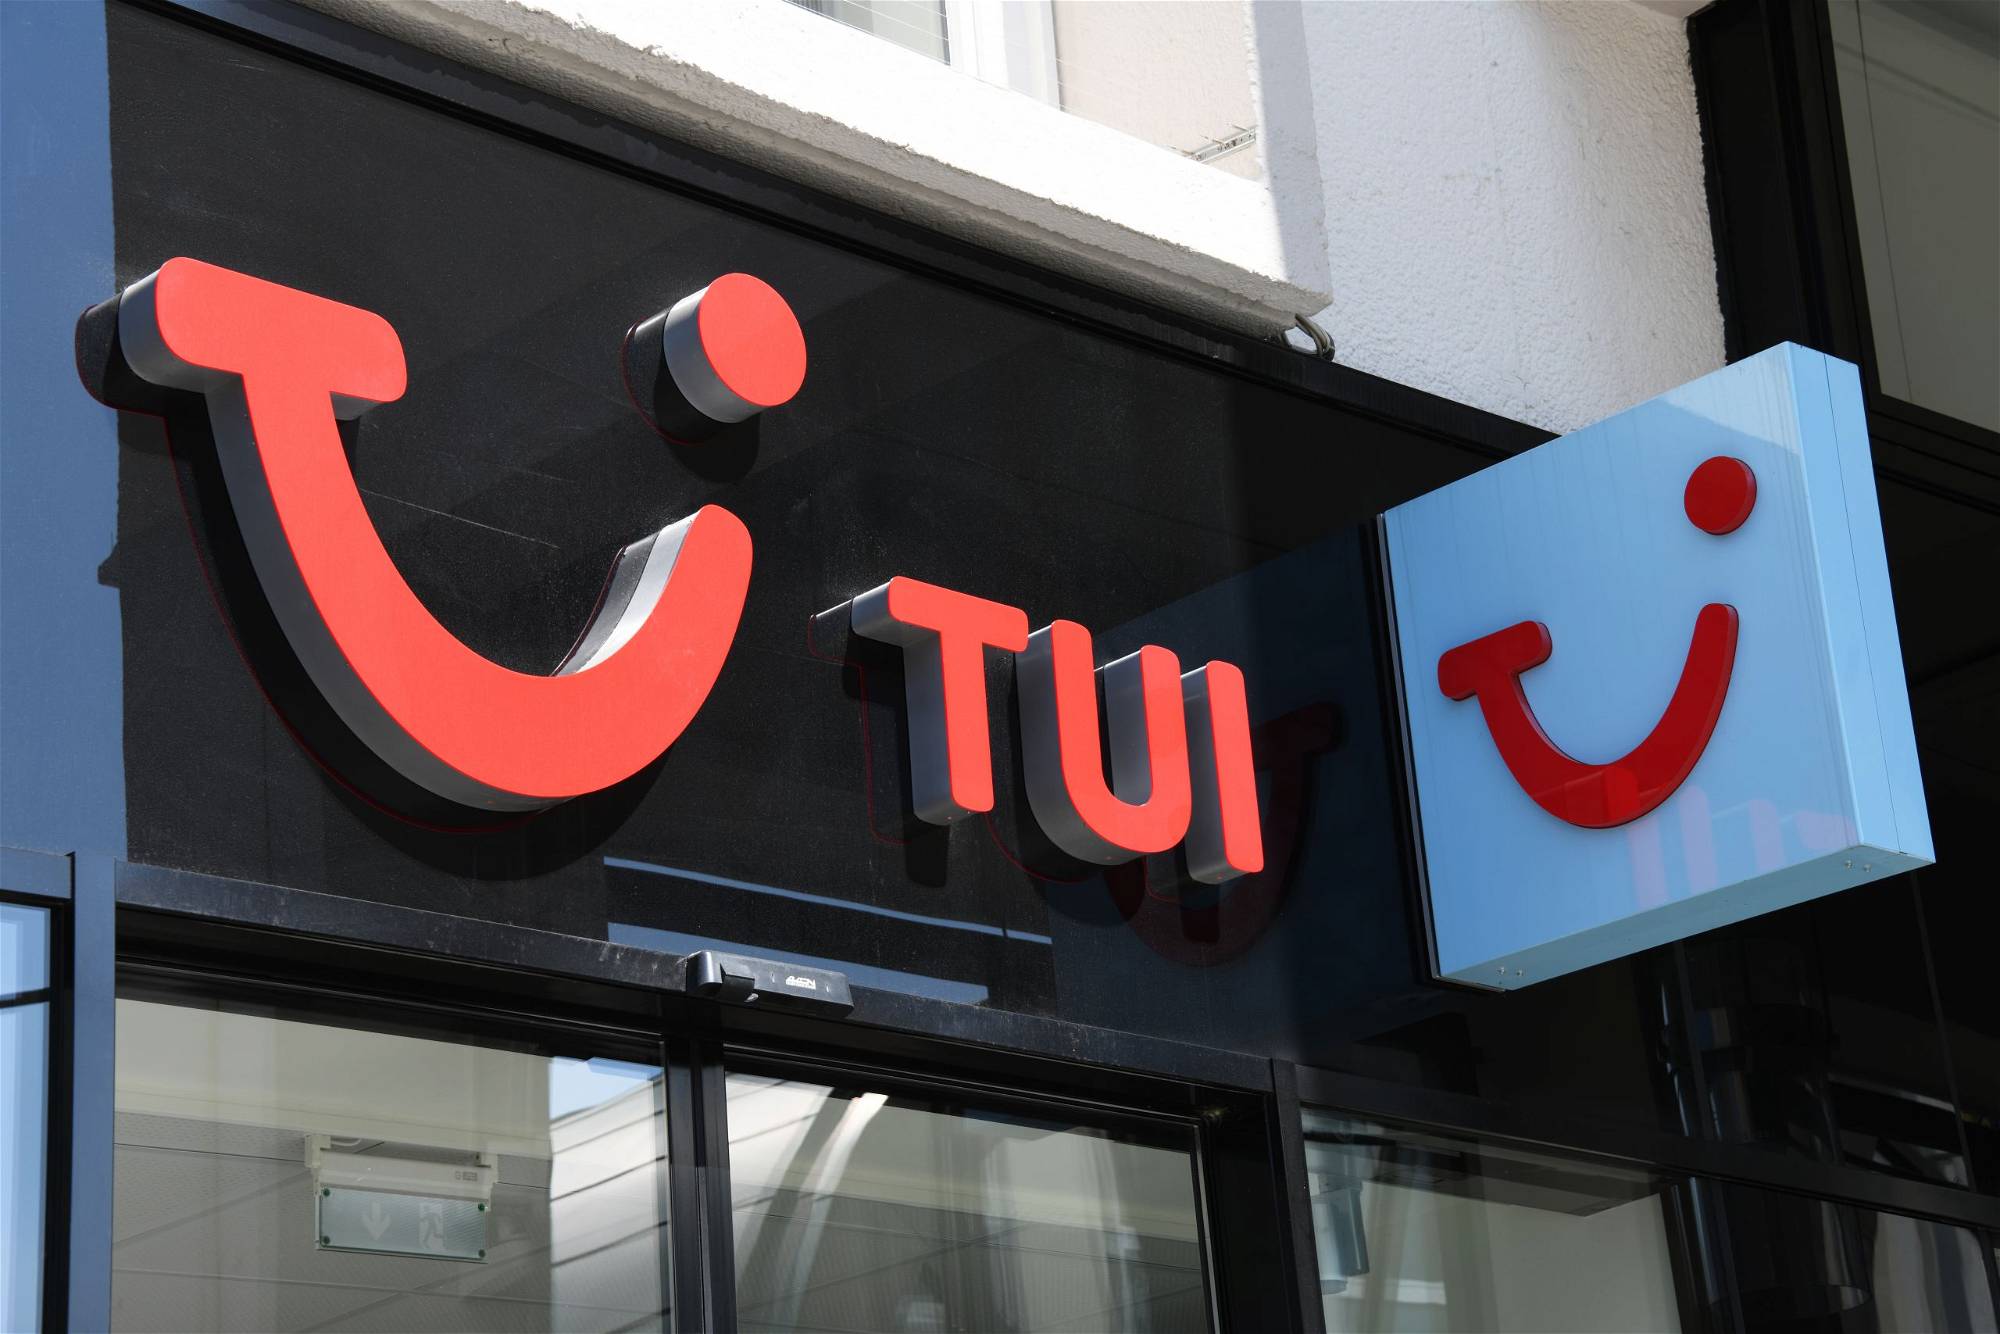 TUI-Aktie Sollten Sie jetzt kaufen